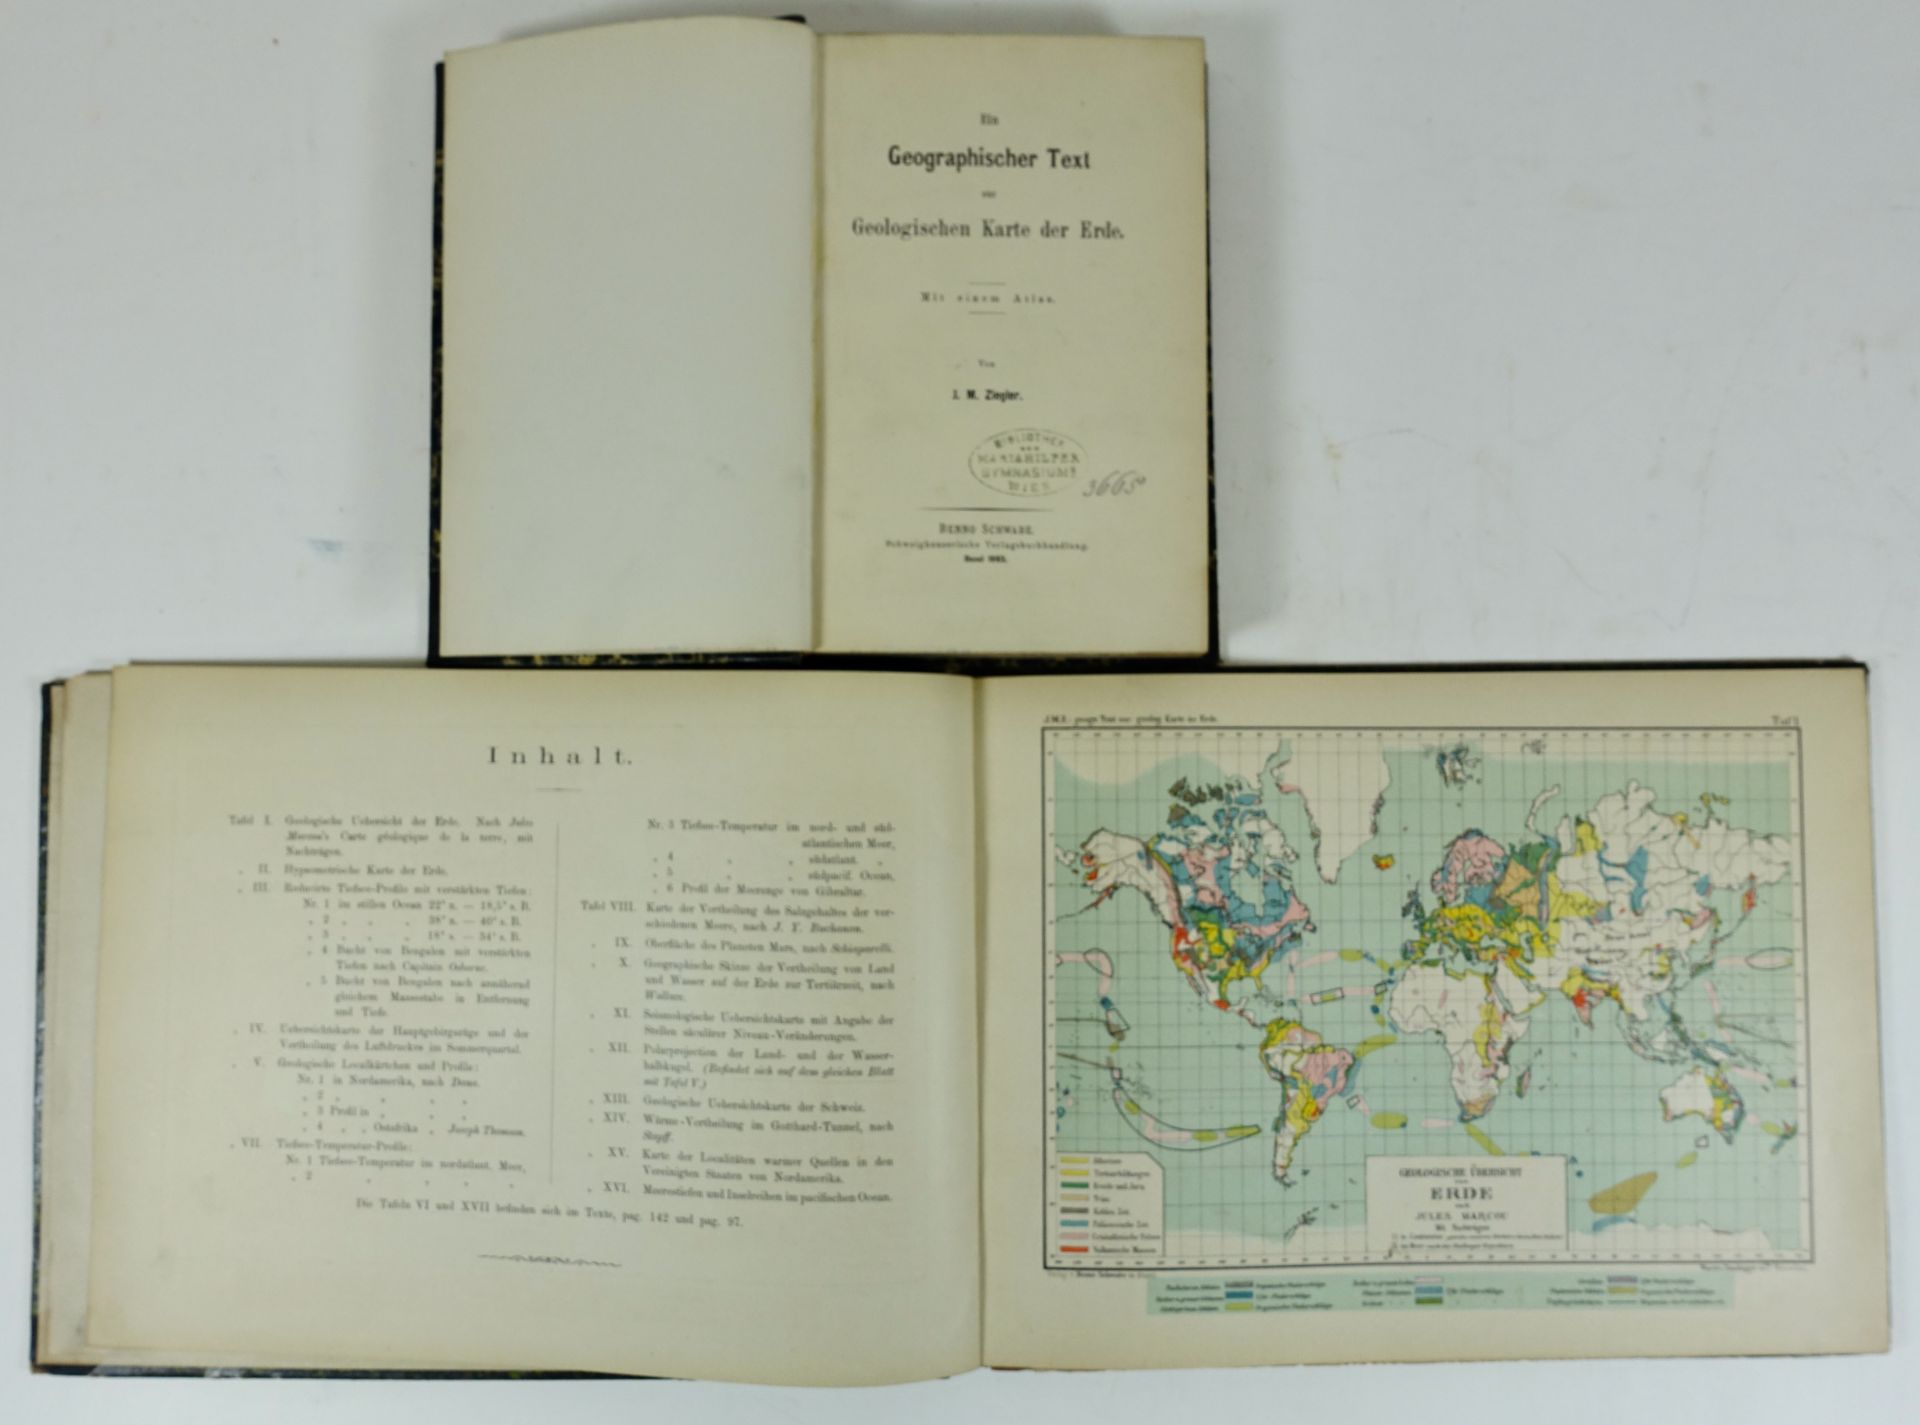 ZIEGLER, J.M. Ein geographischer Text zur geologischen Karte der Erde. Basel, 1883